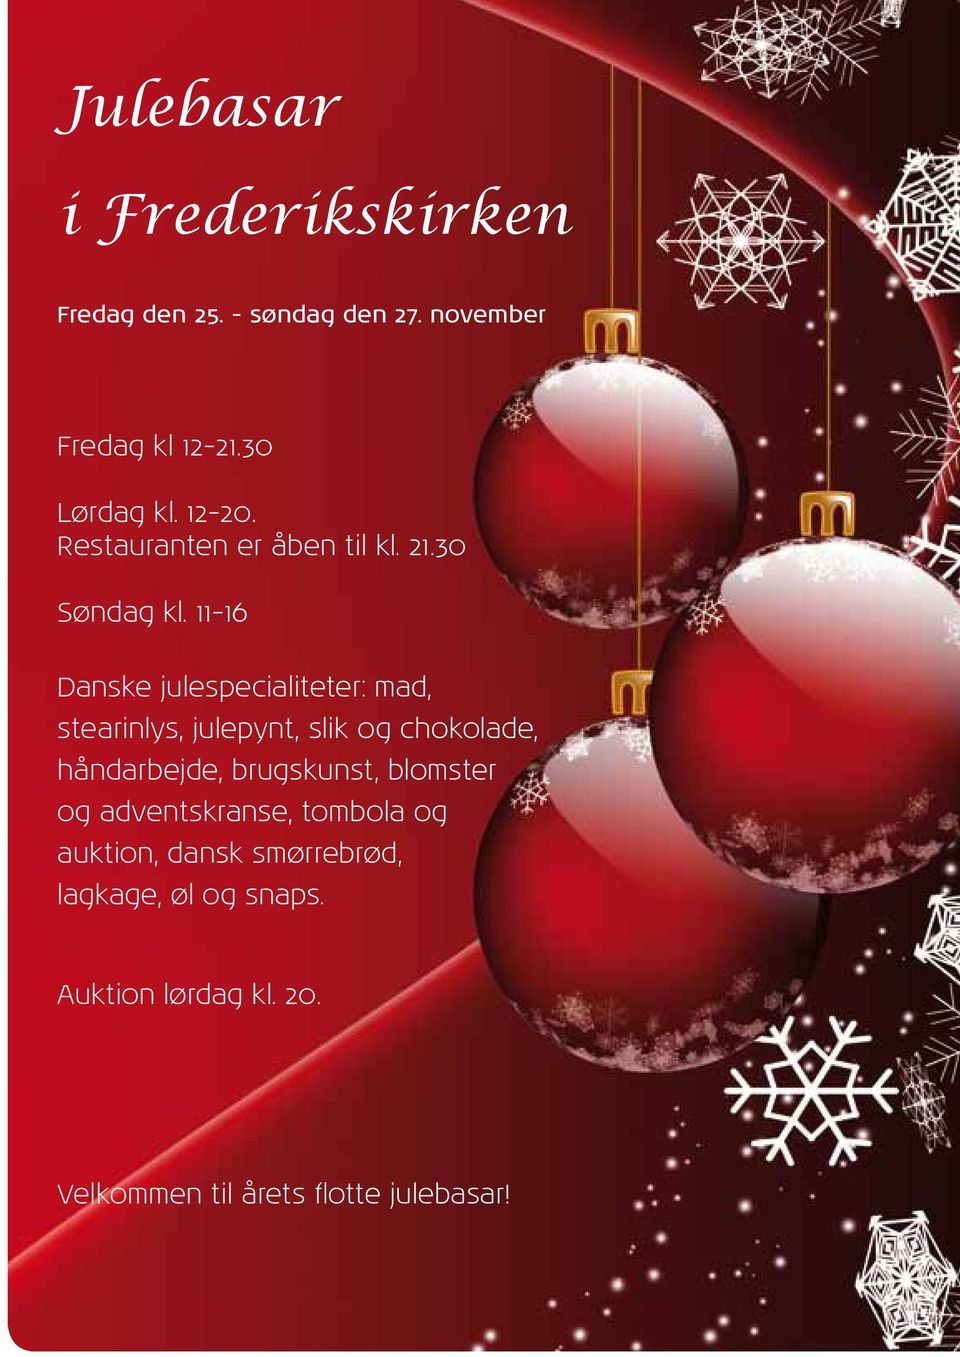 11-16 Danske julespecialiteter: mad, stearinlys, julepynt, slik og chokolade, håndarbejde,